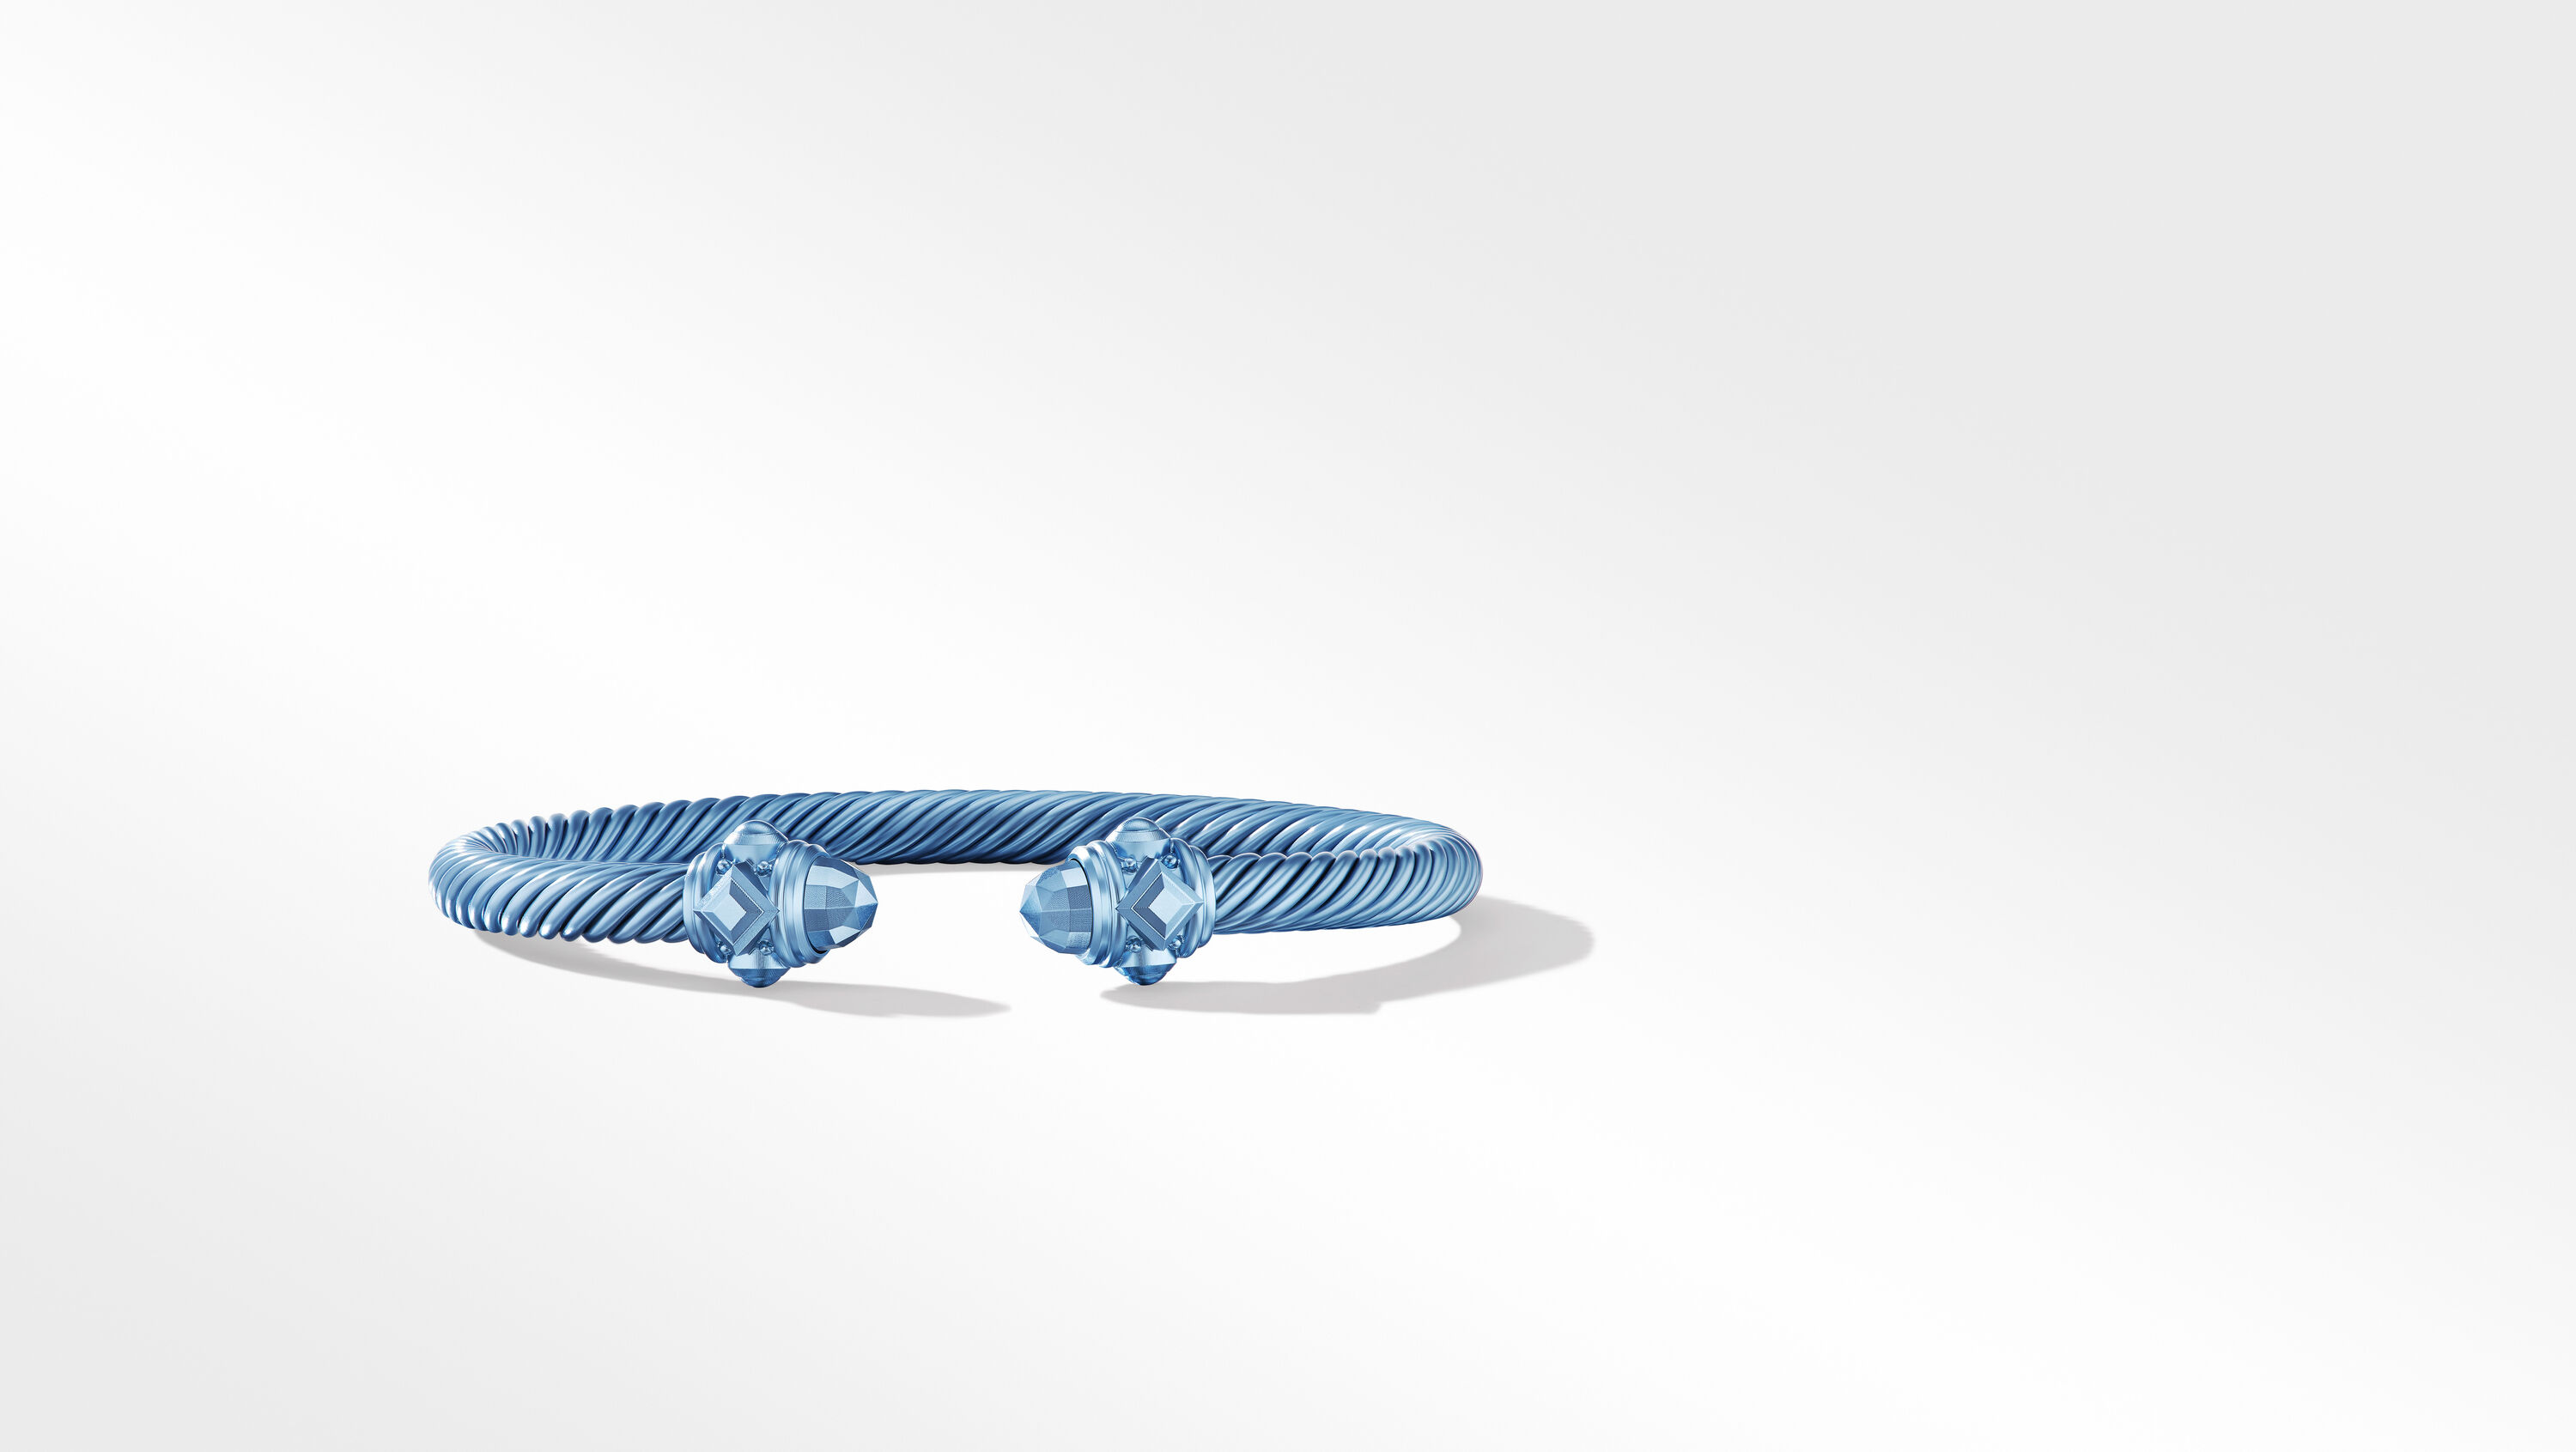 Renaissance Bracelet in Blue Aluminum